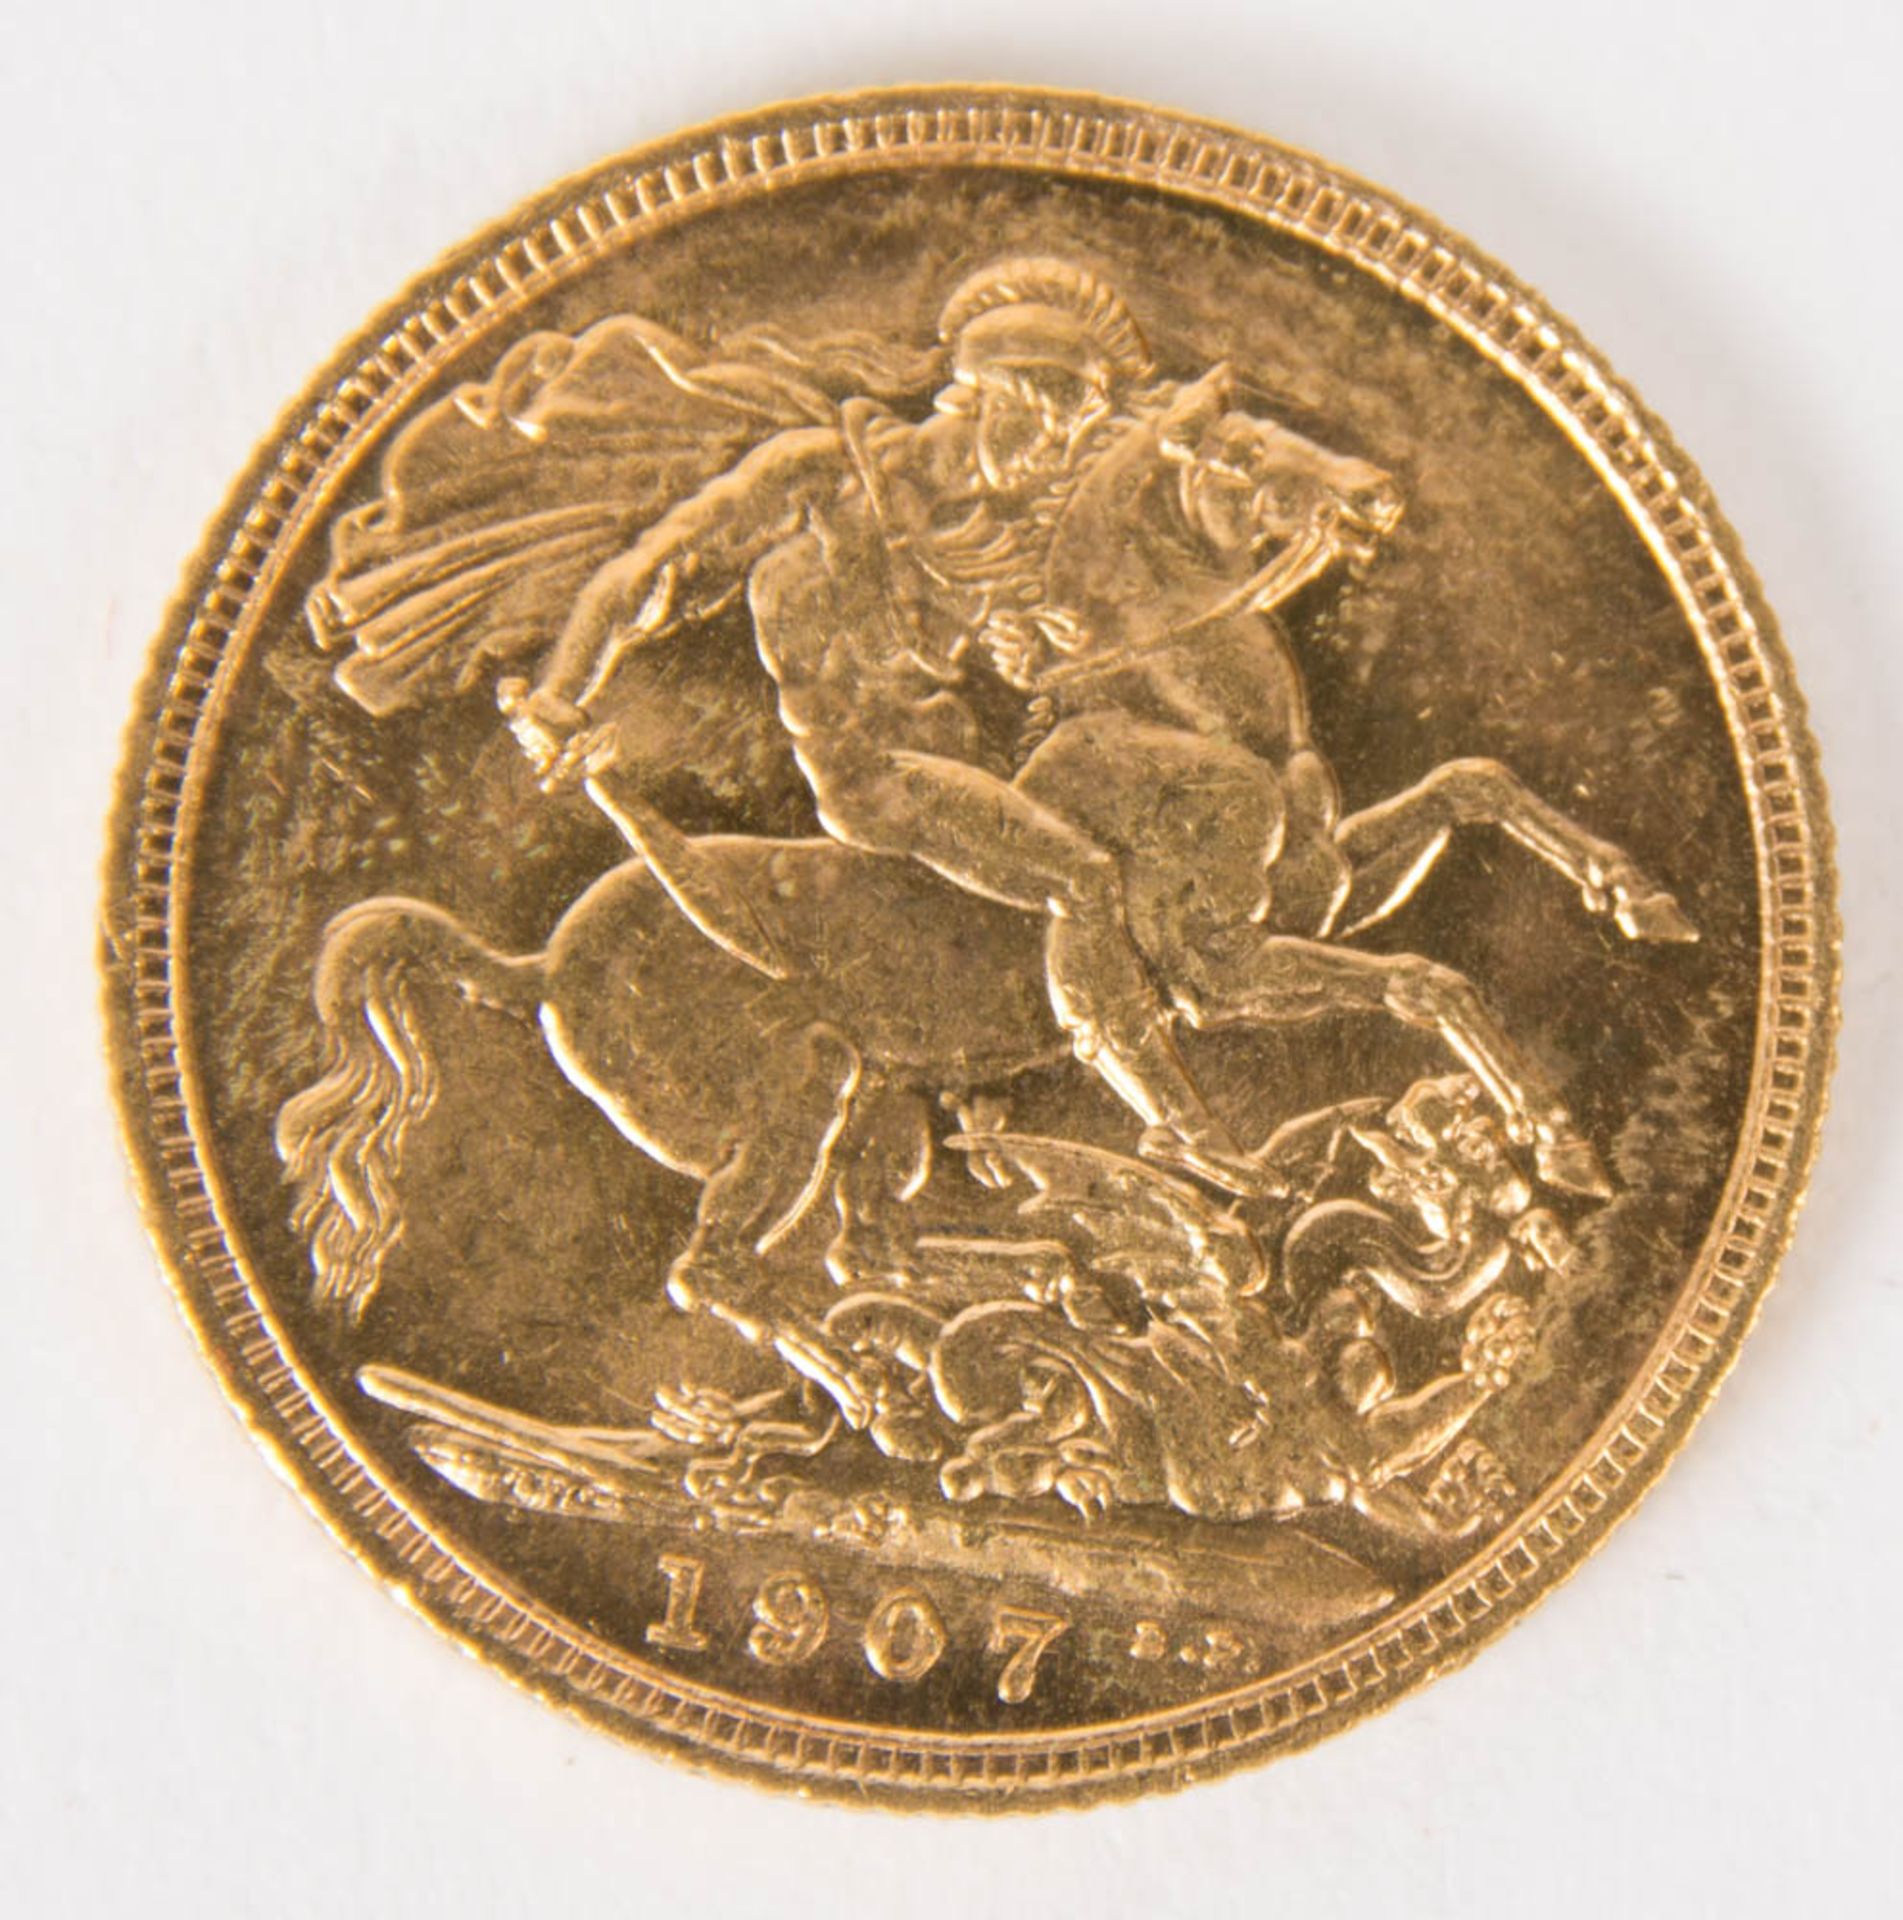 Australien: Sovereign 1907 Gold. - Image 2 of 2